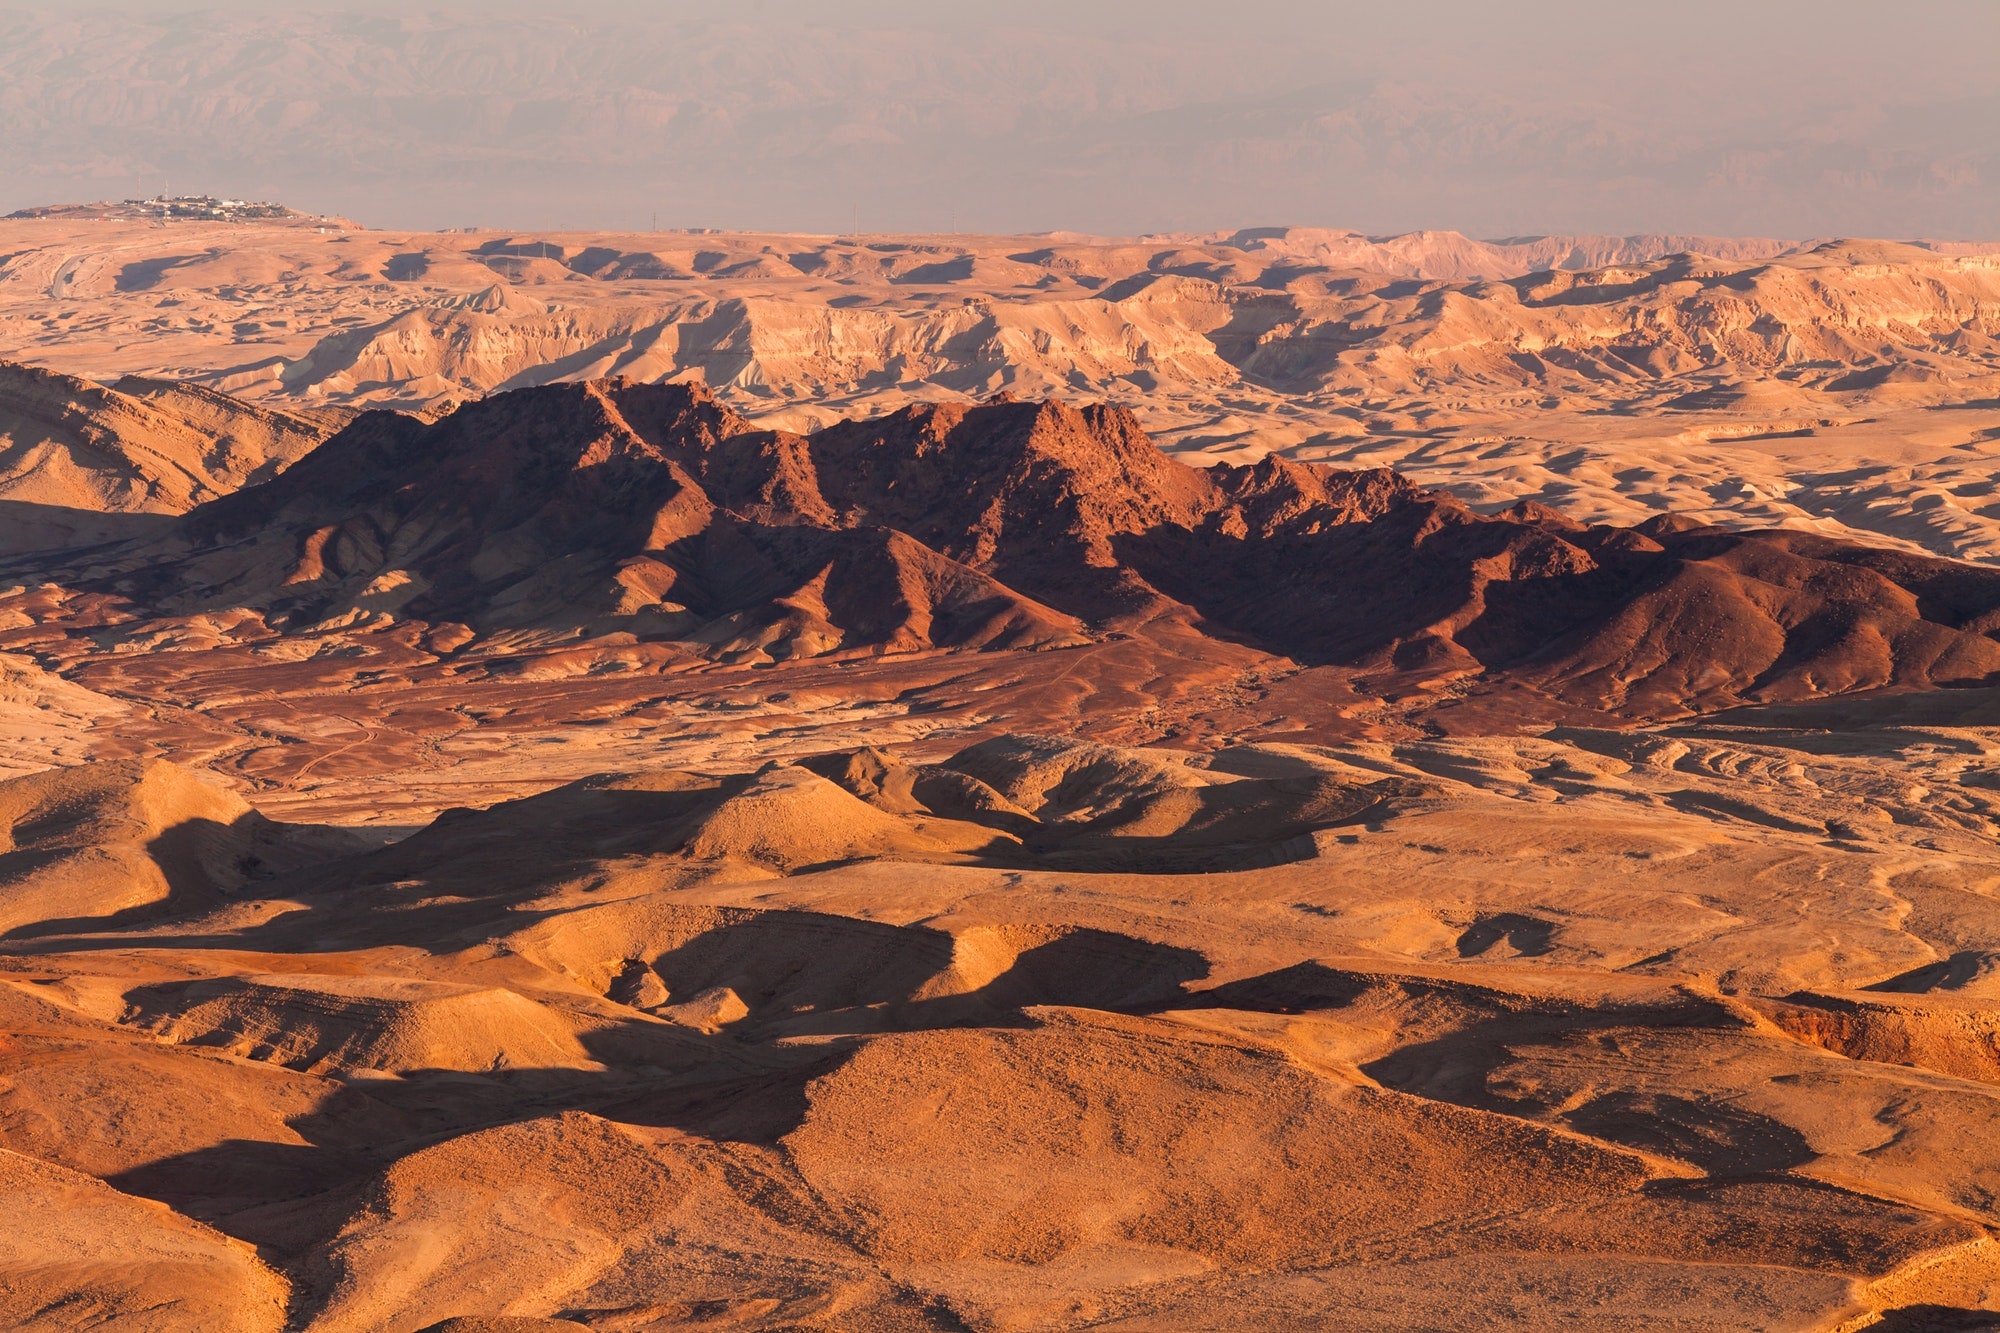 Sunset in the Negev desert. Makhtesh Ramon Crater